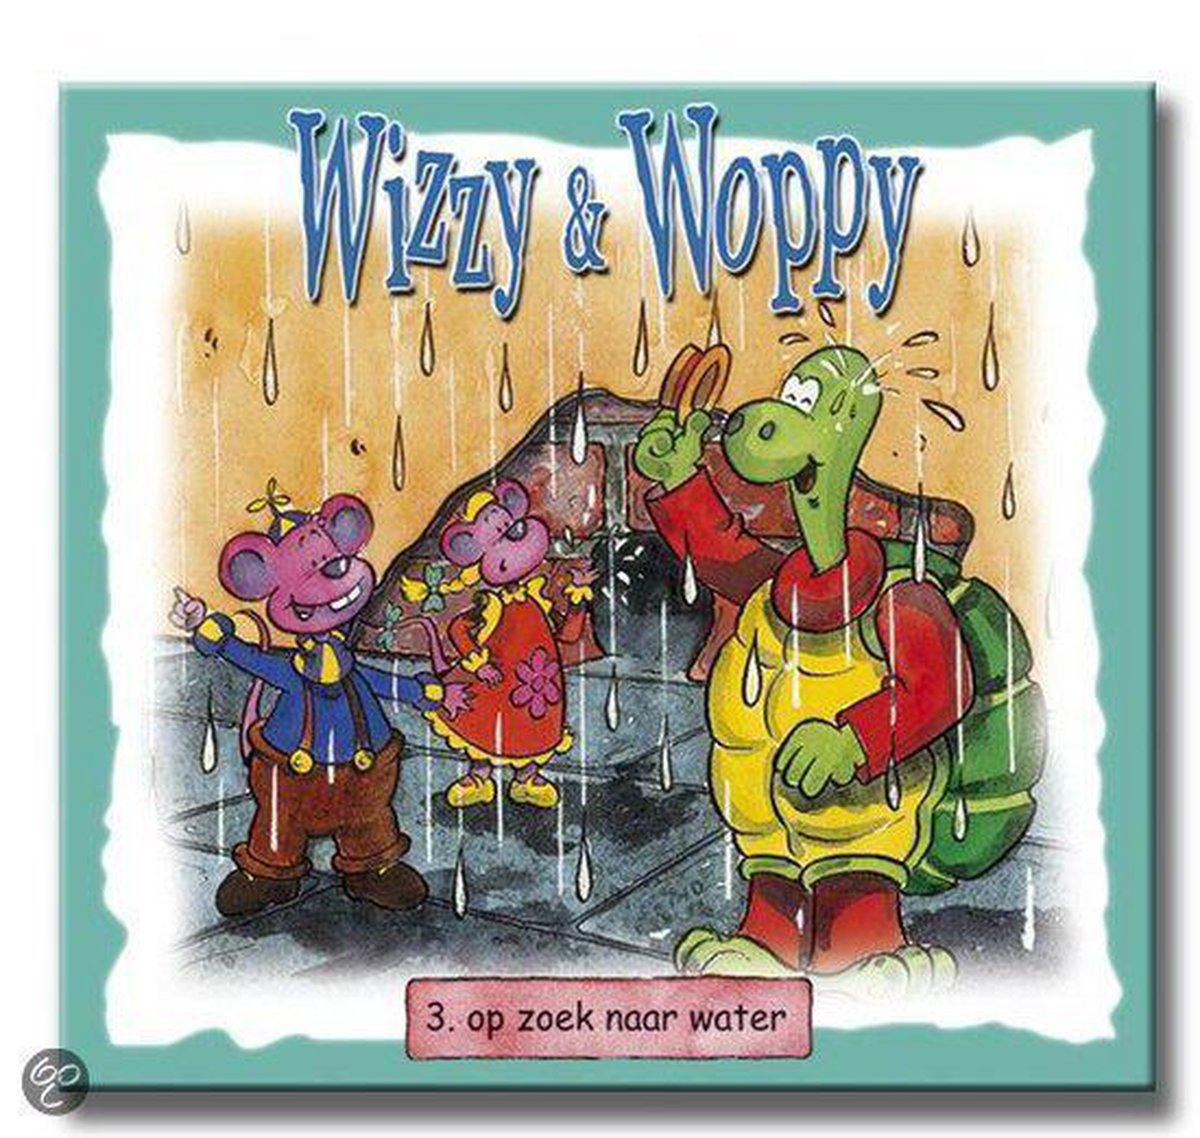 Op zoek naar water / Wizzy & Woppy / 3